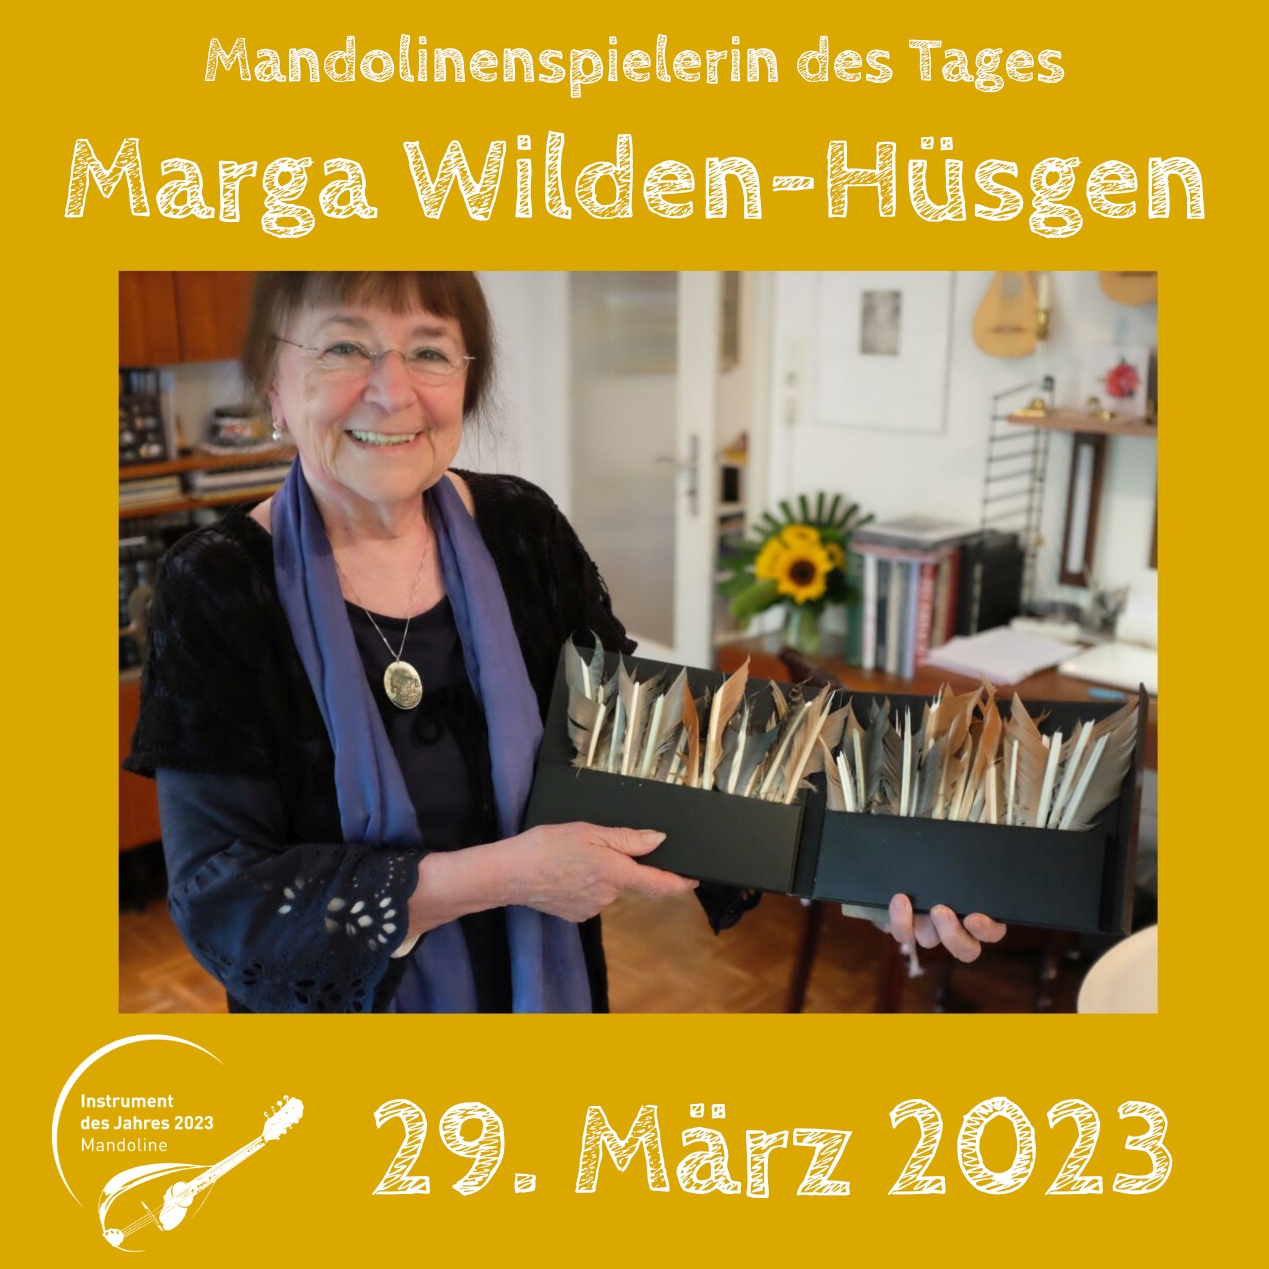 Marga Wilden-Hüsgen Mandoline Instrument des Jahres 2023 Mandolinenspieler des Tages